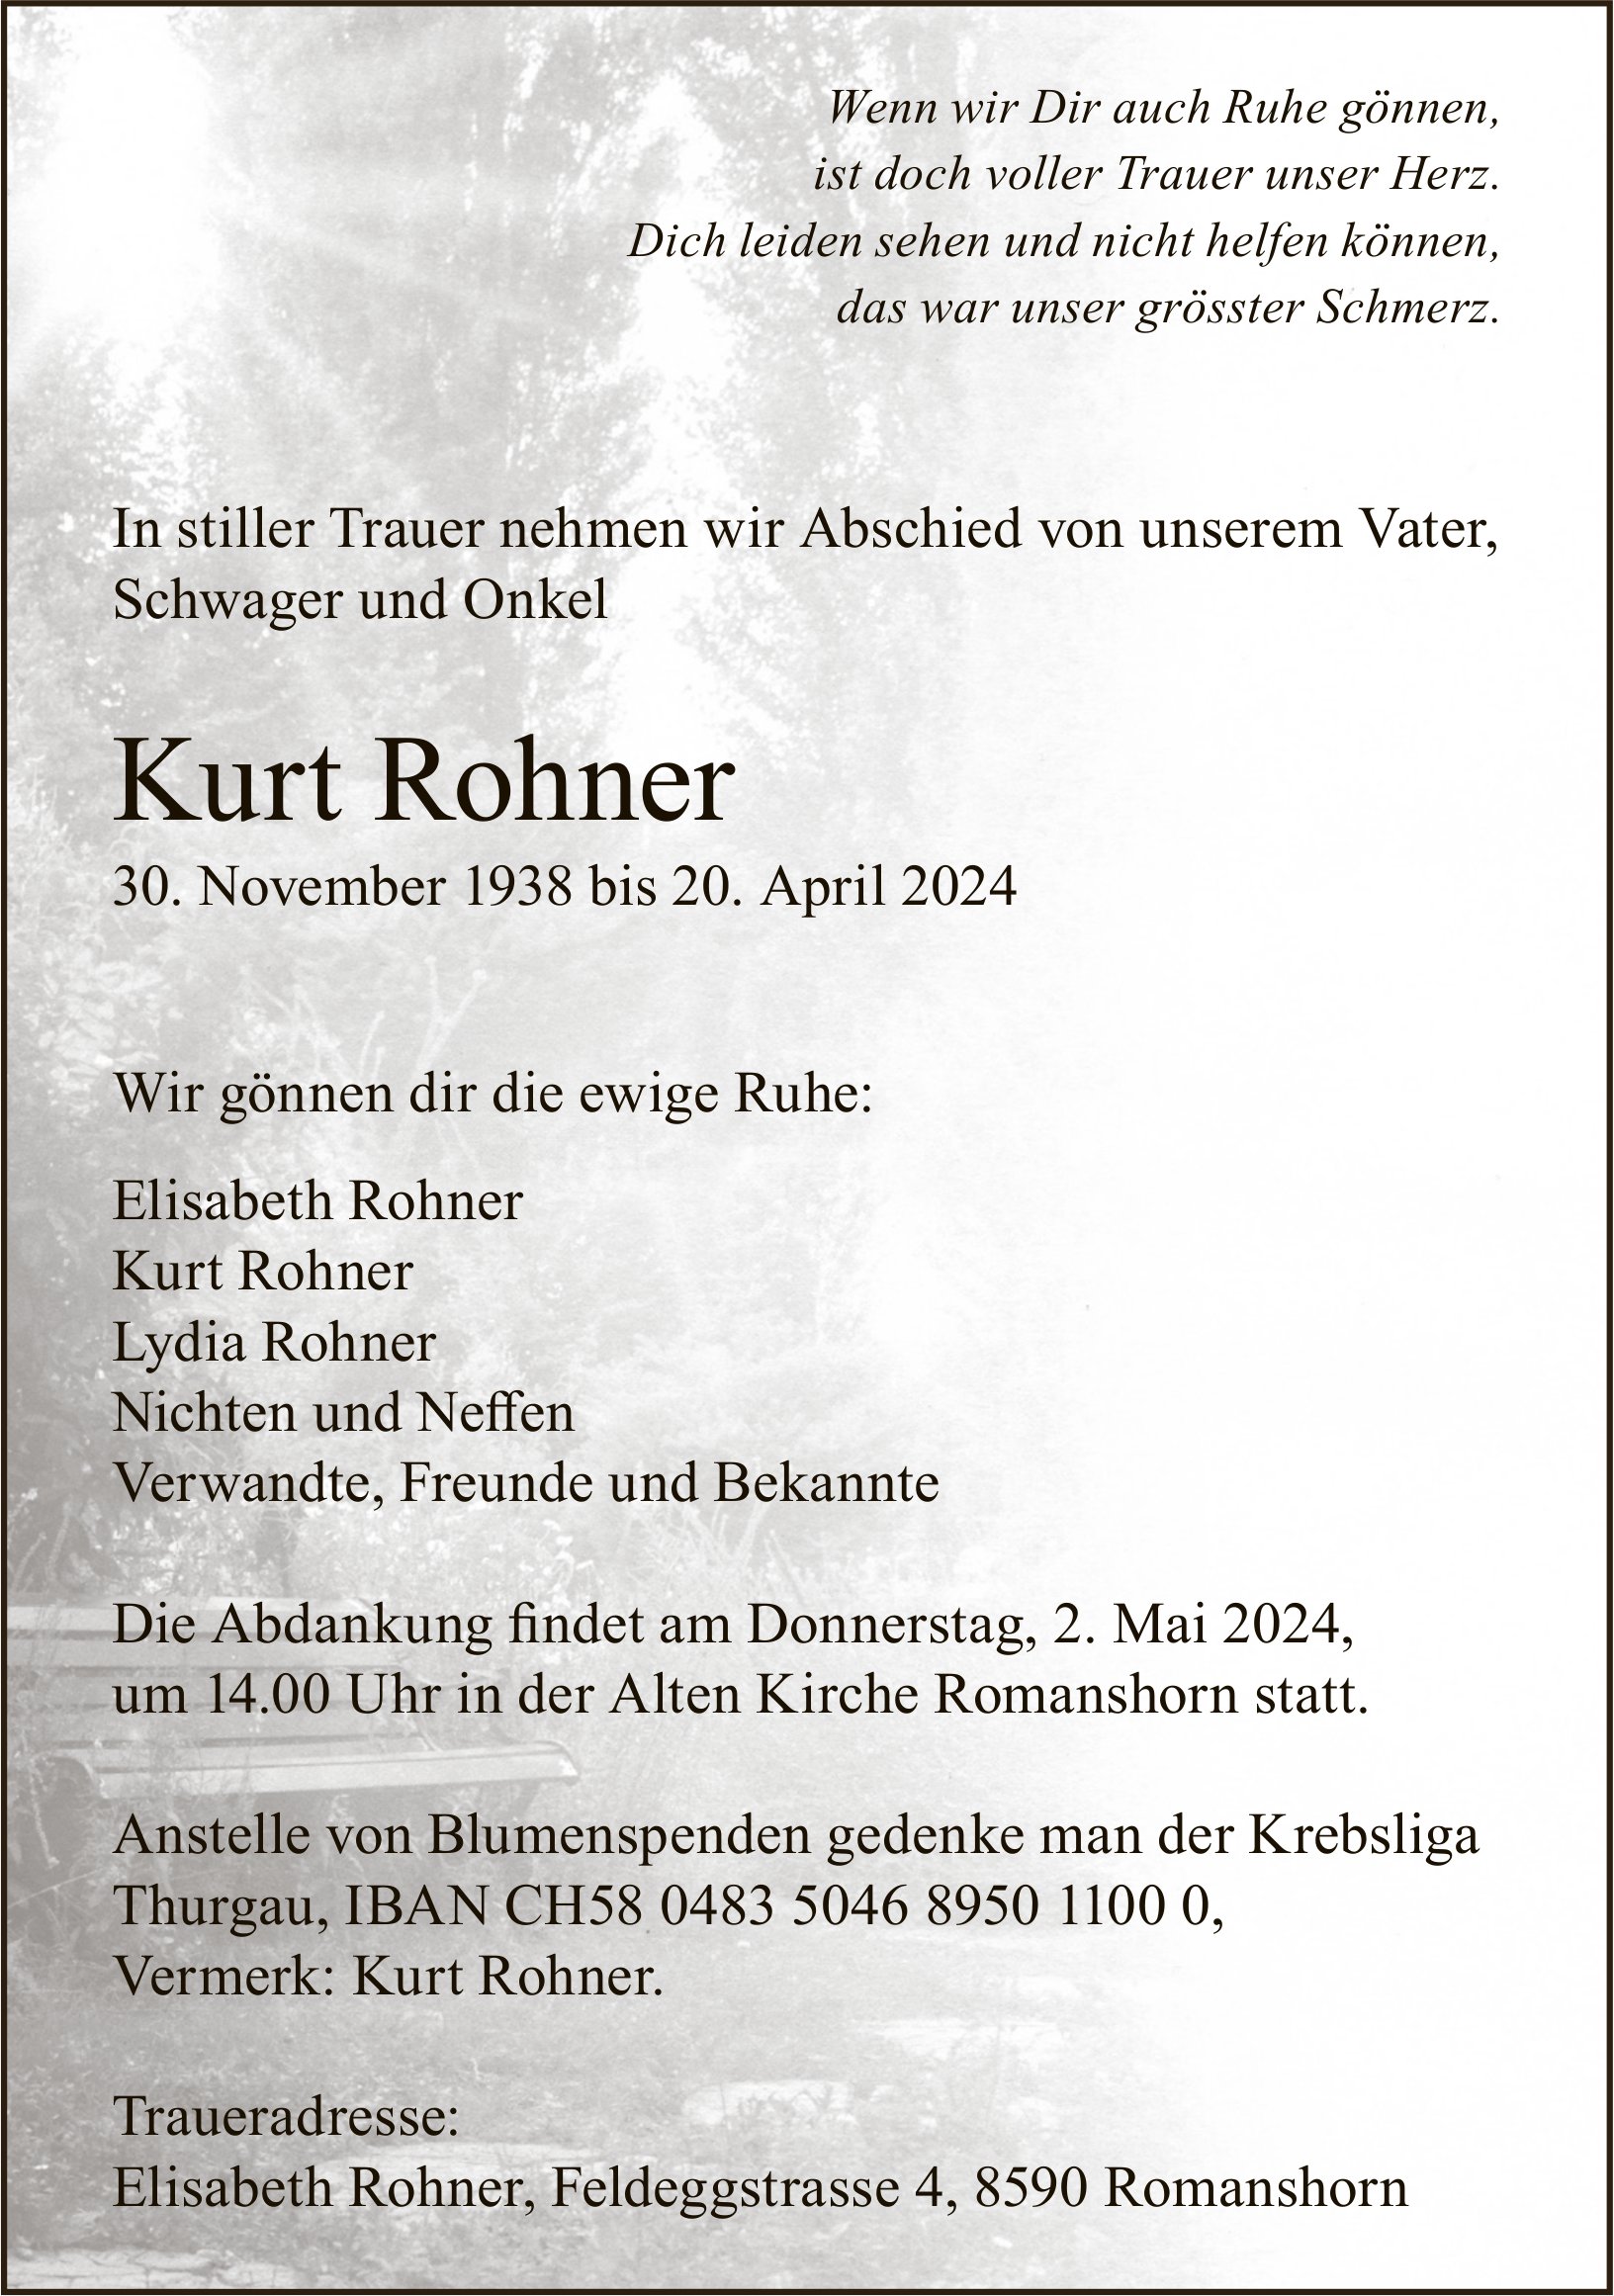 Rohner Kurt, April 2024 / TA